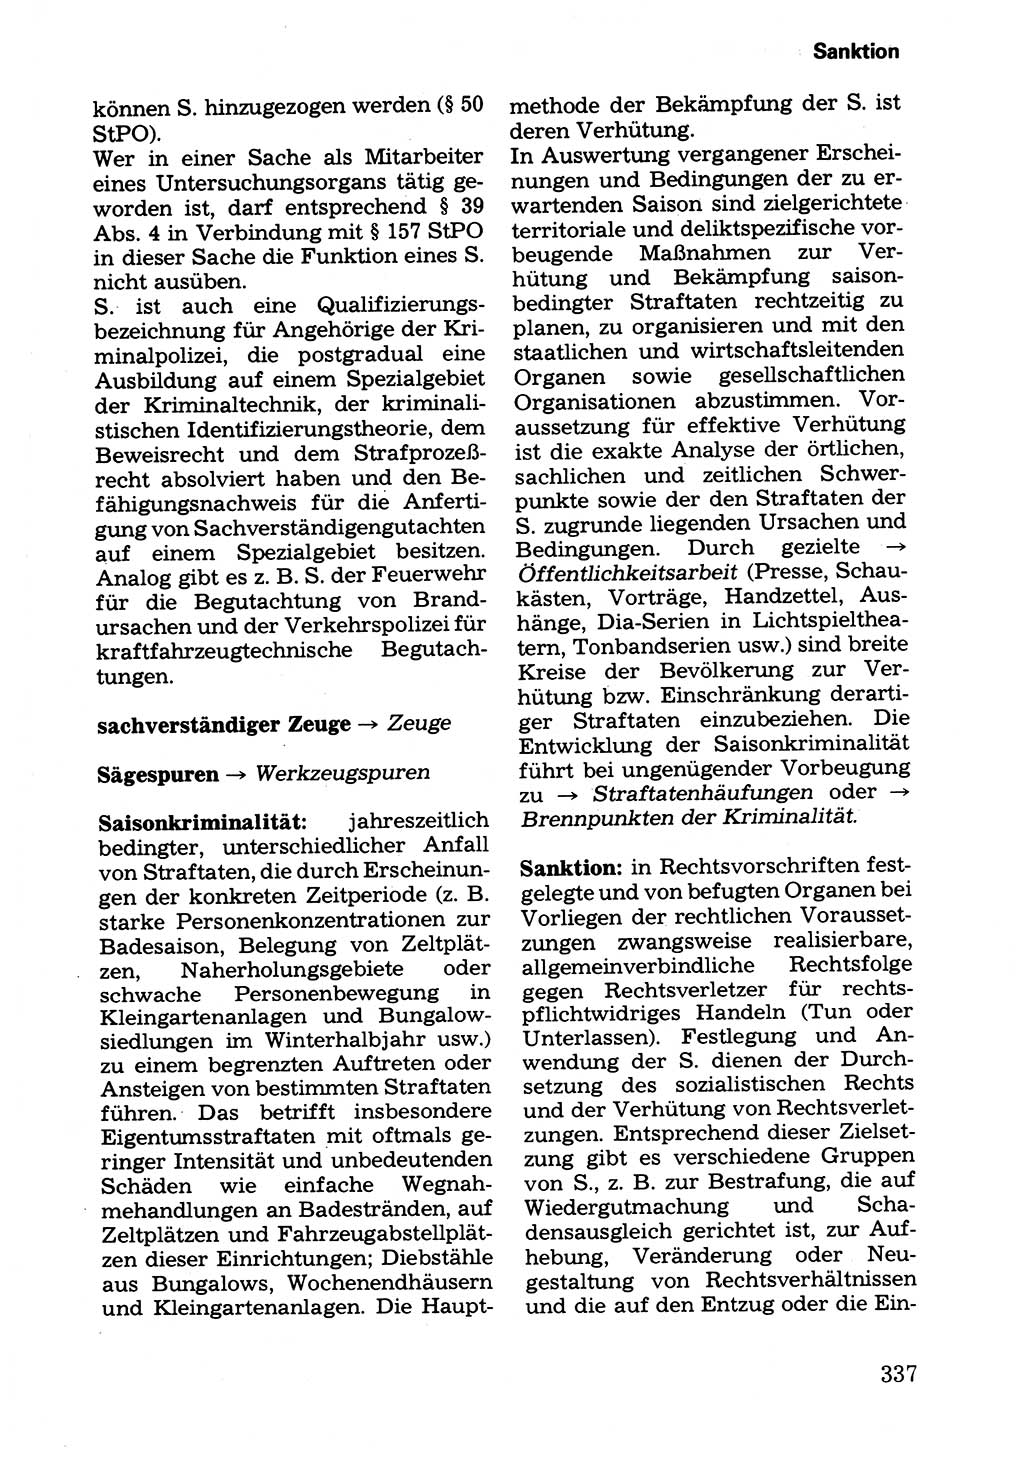 Wörterbuch der sozialistischen Kriminalistik [Deutsche Demokratische Republik (DDR)] 1981, Seite 337 (Wb. soz. Krim. DDR 1981, S. 337)